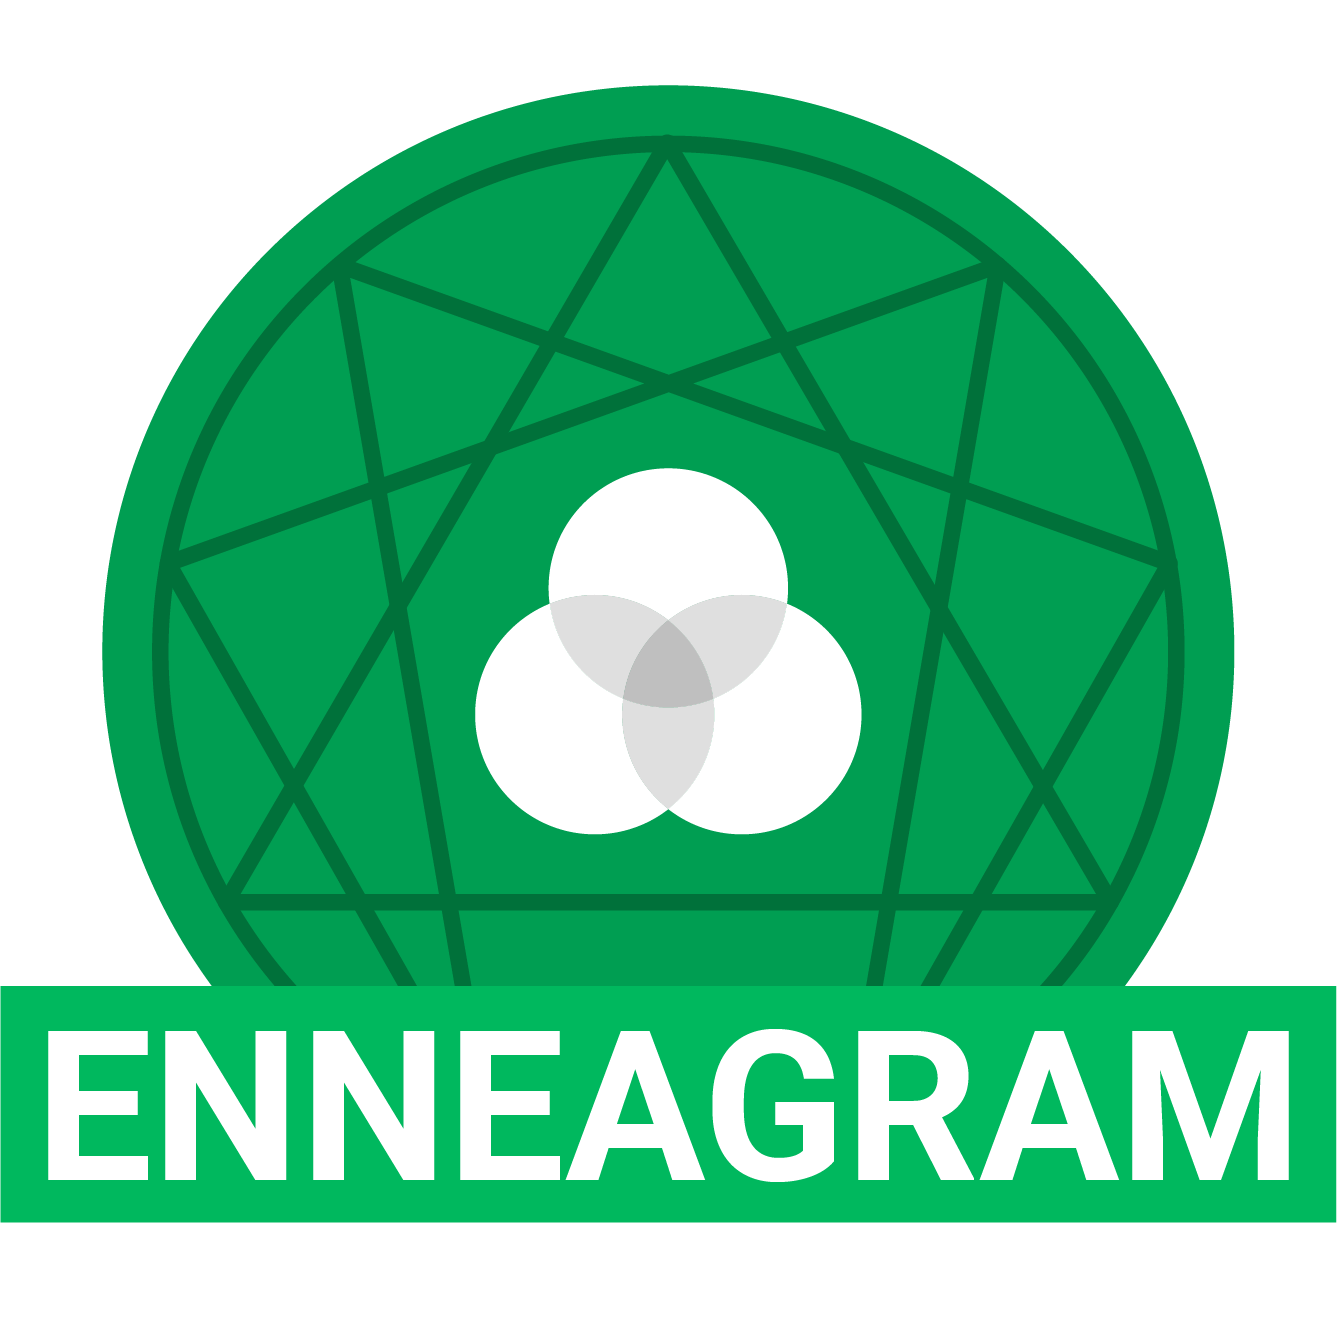 Enneagram assessment logo